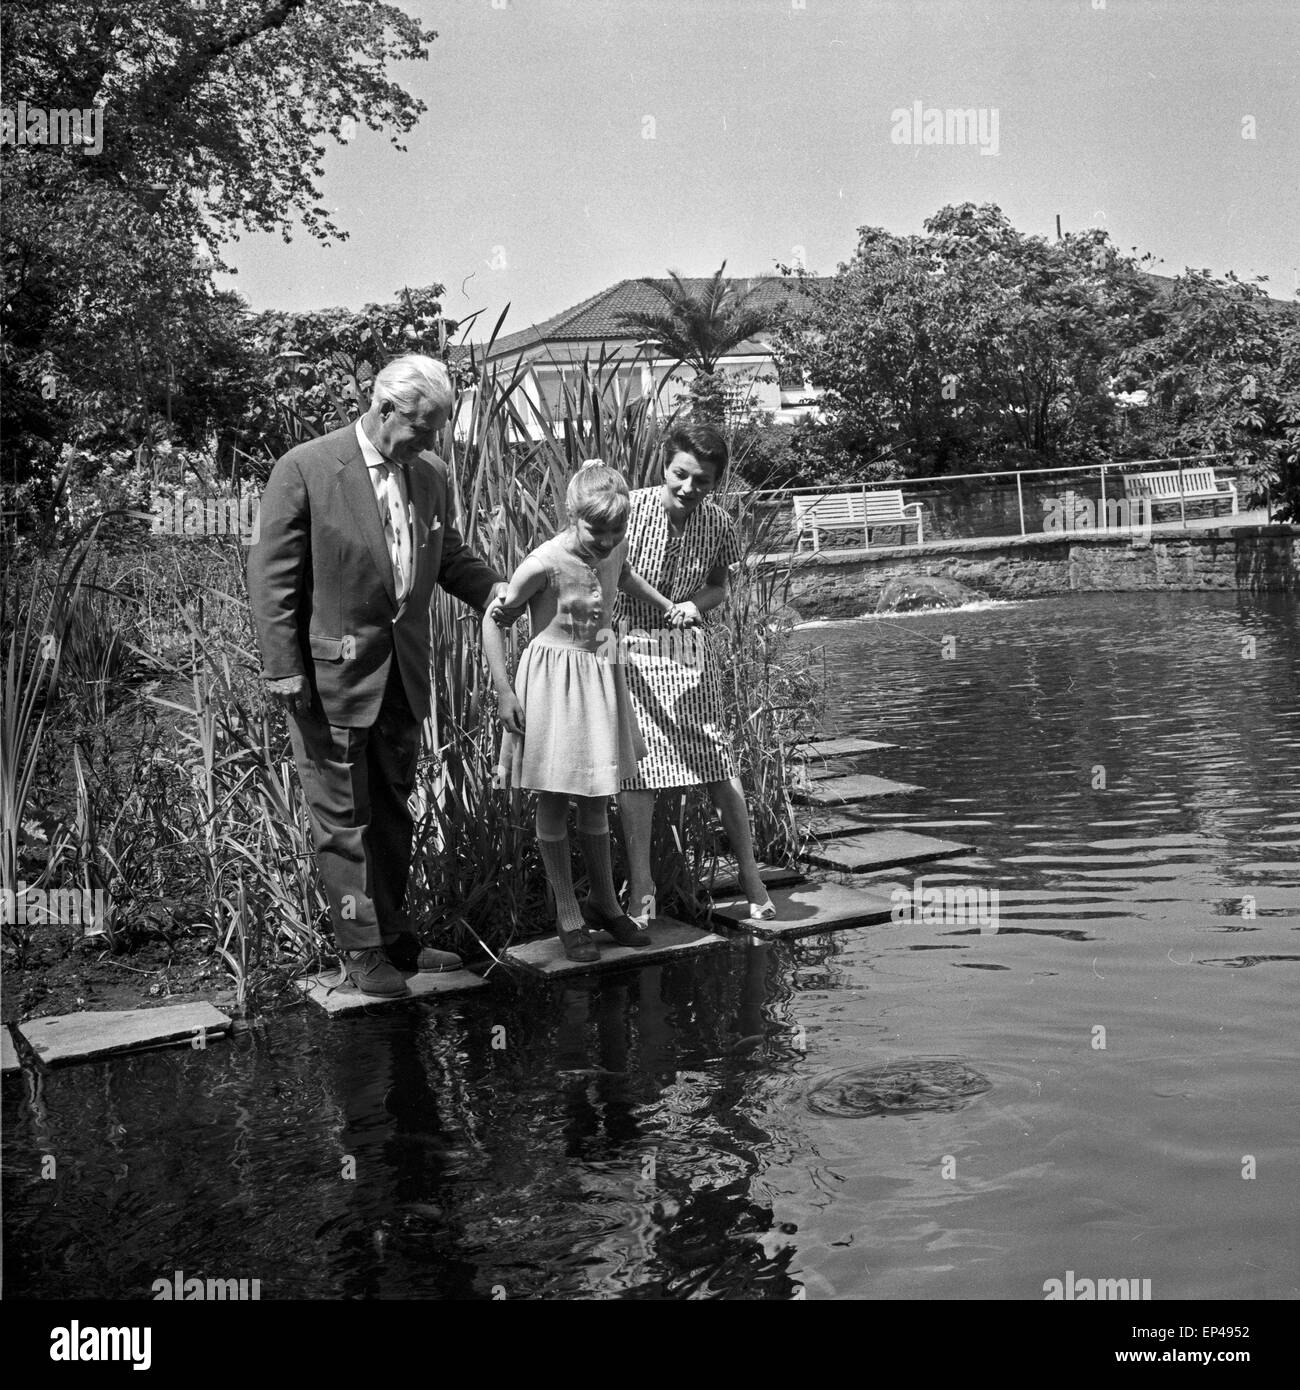 Programmsprecherin Irene Koss mit einem Berliner Ferienkind im Park Planten un Blomen in Hamburg, Deutschland 1950er Jahre. Stock Photo